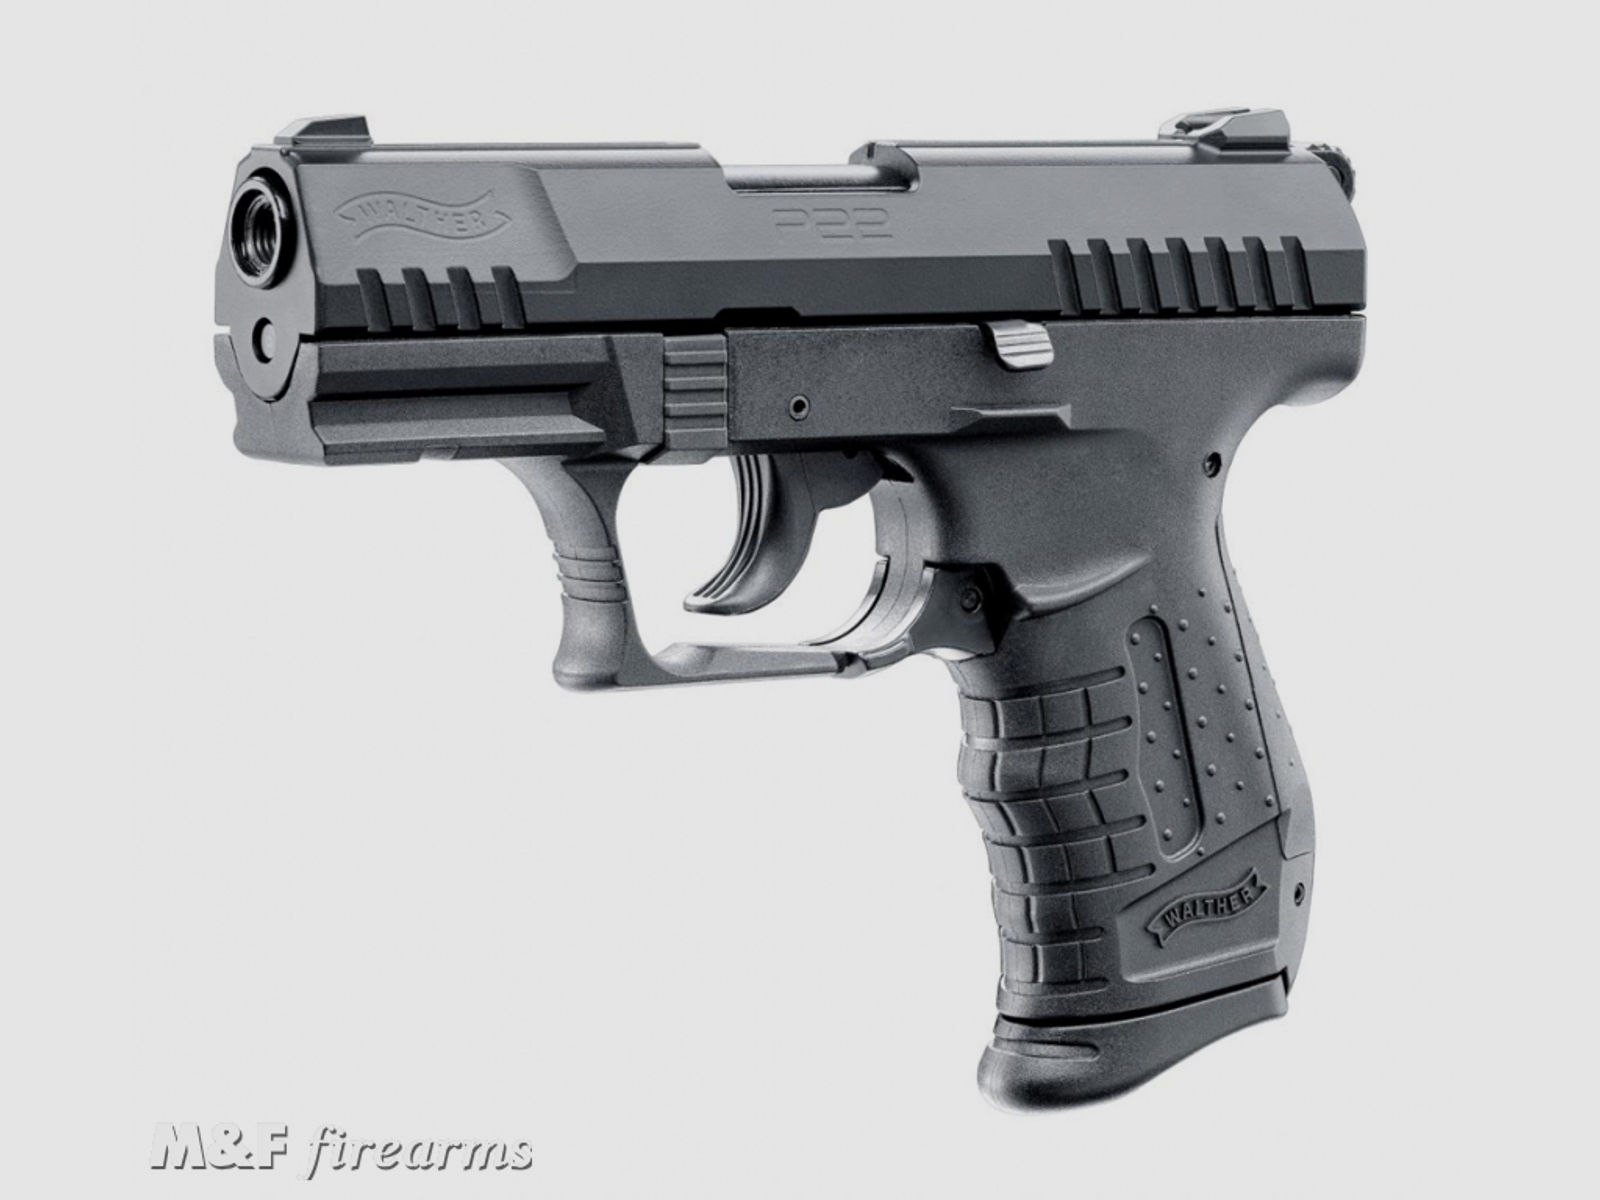 Walther P22 Ready Kaliber 9mm P.A.K. Schreckschusspistole zur Selbstverteidigung entwickelt